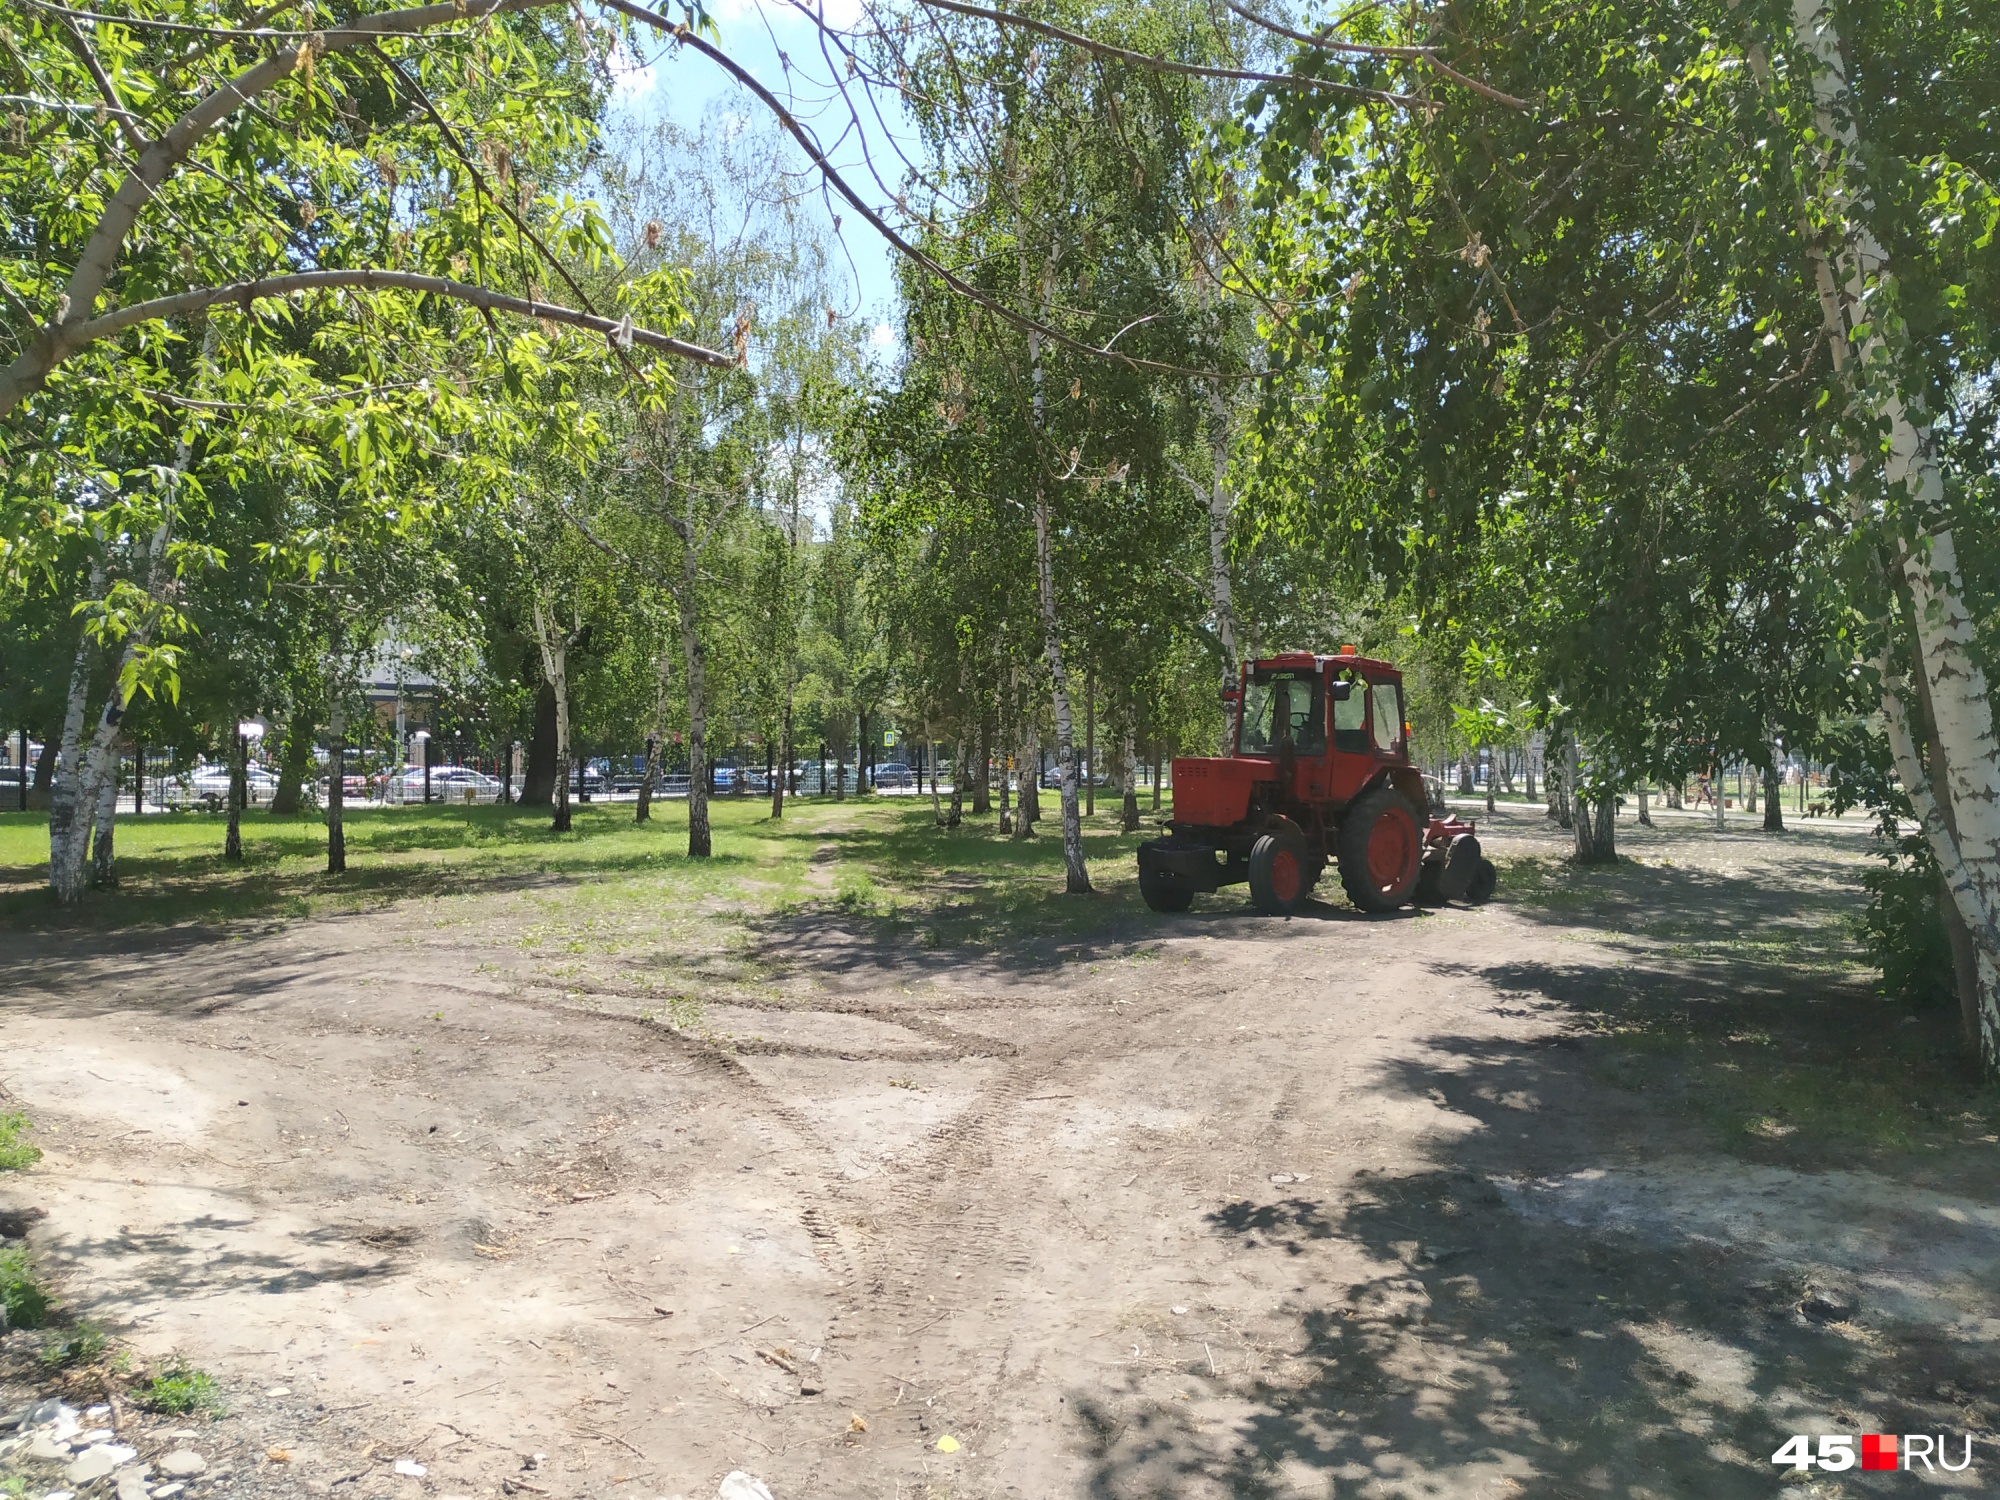 Возле входа со стороны улицы Володарского еще нет новых газонов